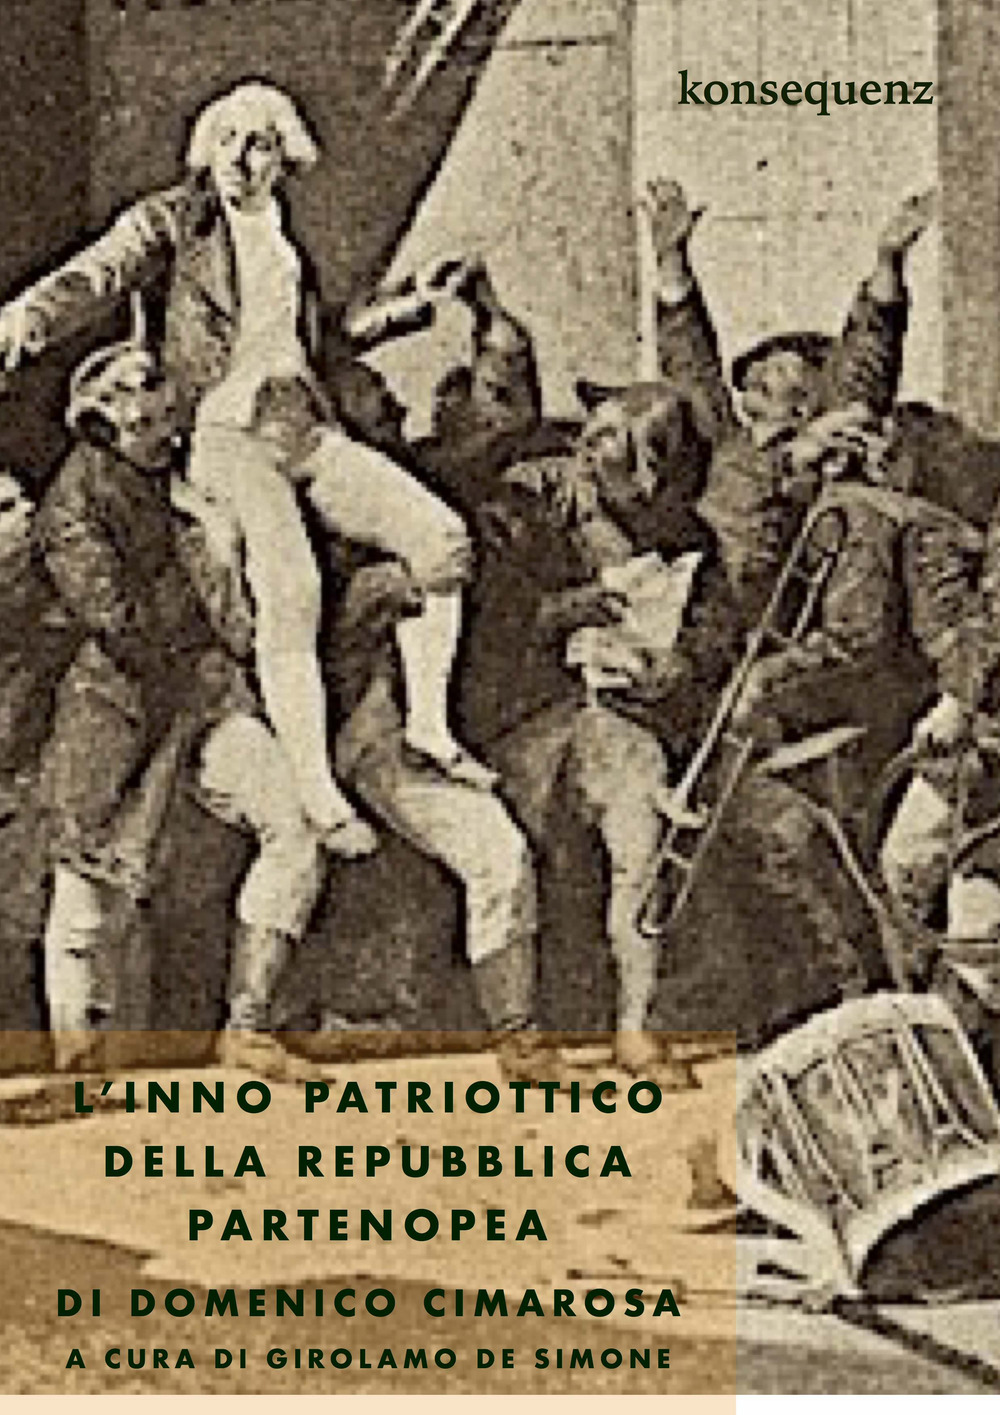 L'Inno patriottico della Repubblica partenopea di Domenico Cimarosa